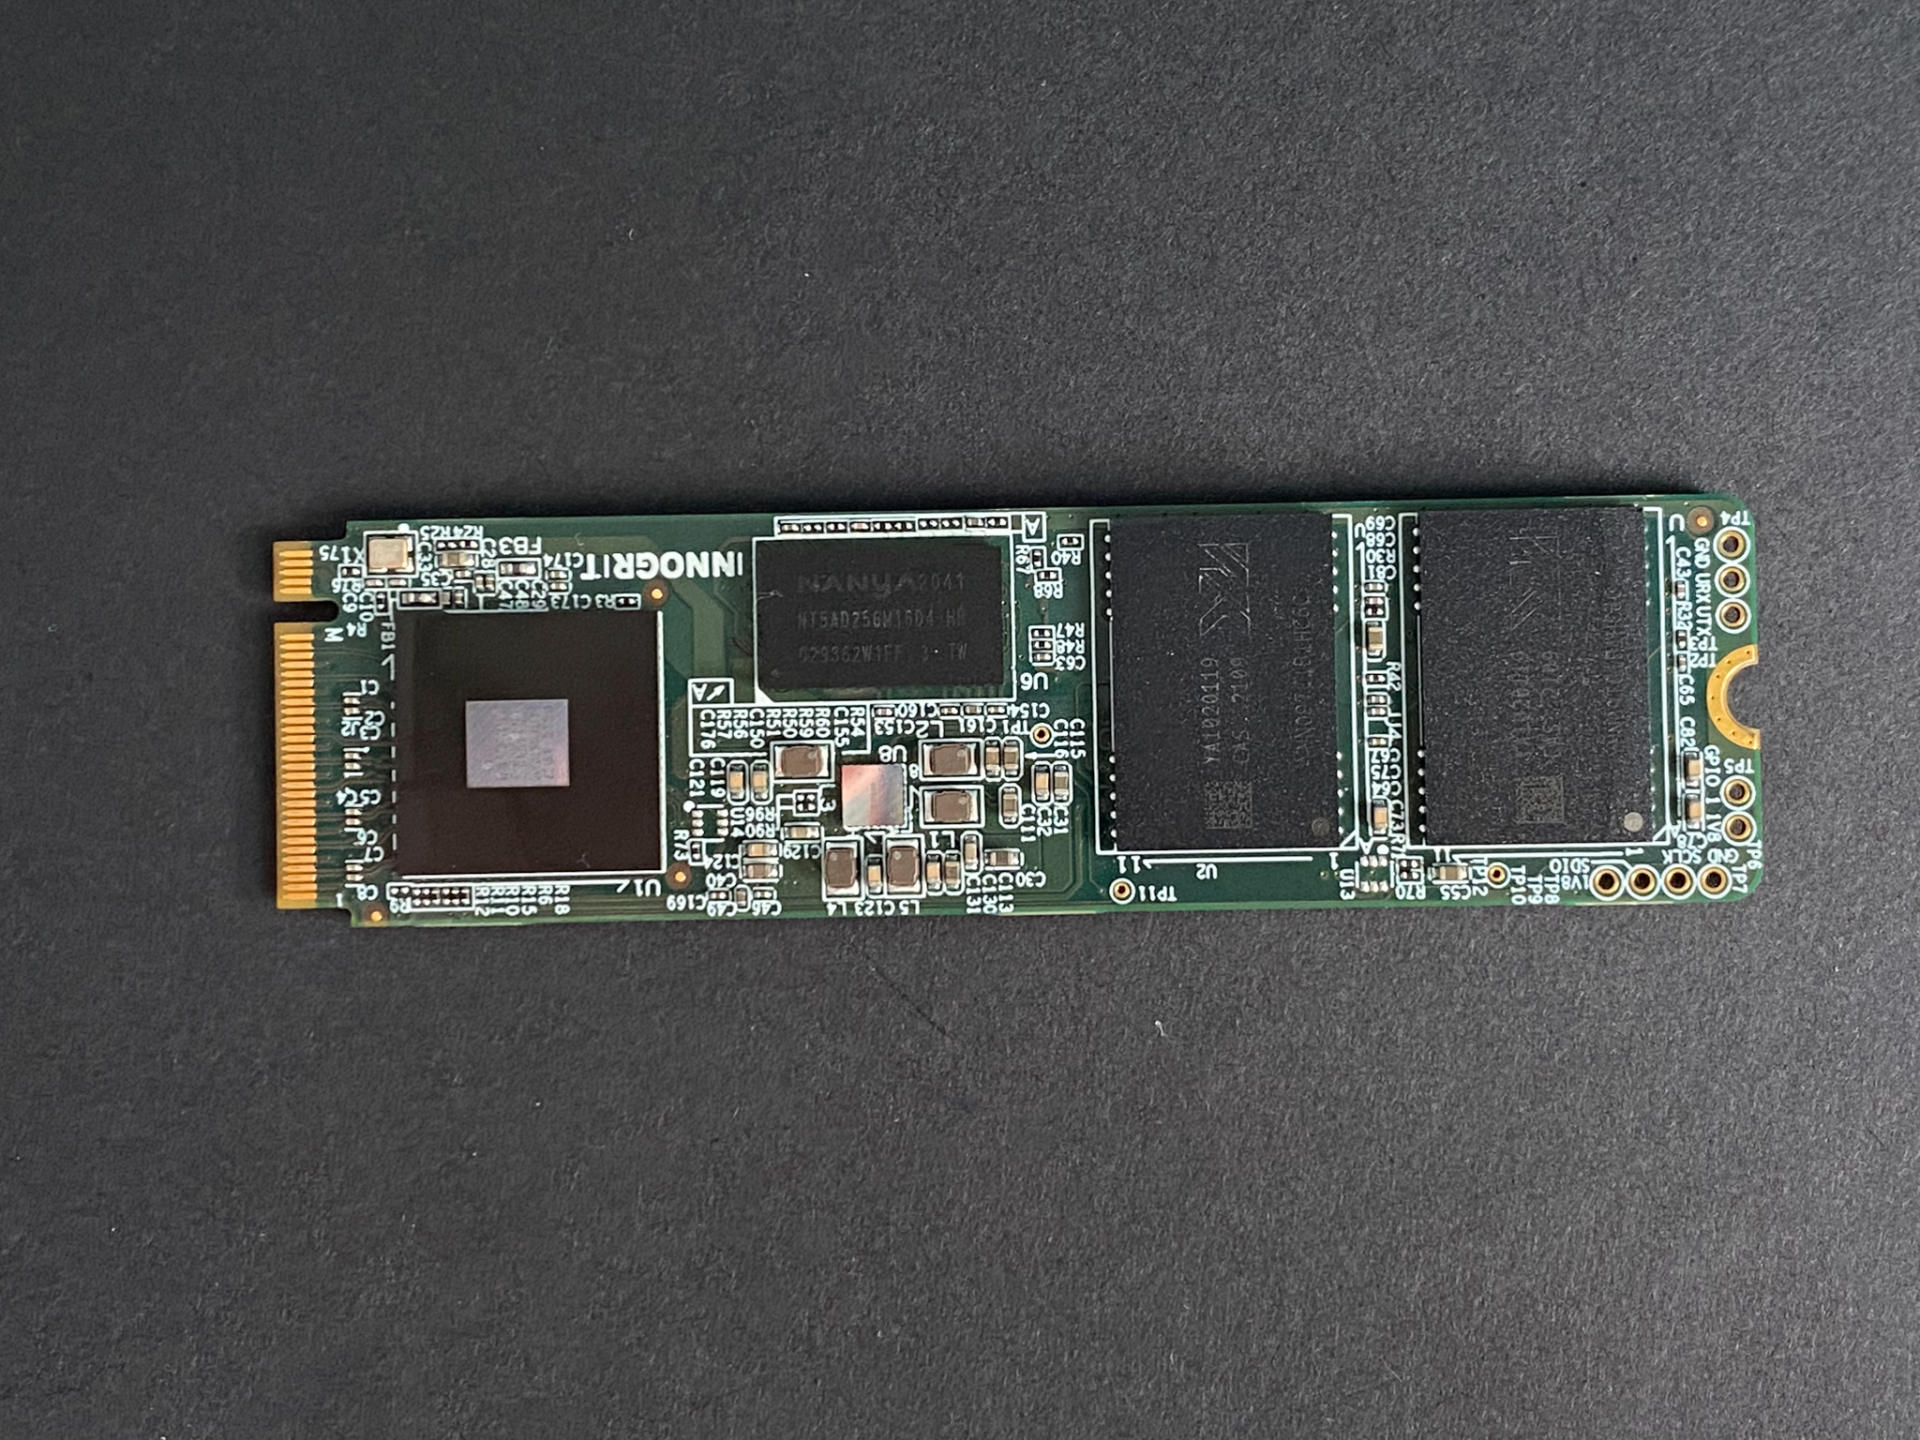 国产新品阿斯加特PCIe4.0硬盘挑战国外名厂顶级产品，胜负如何？